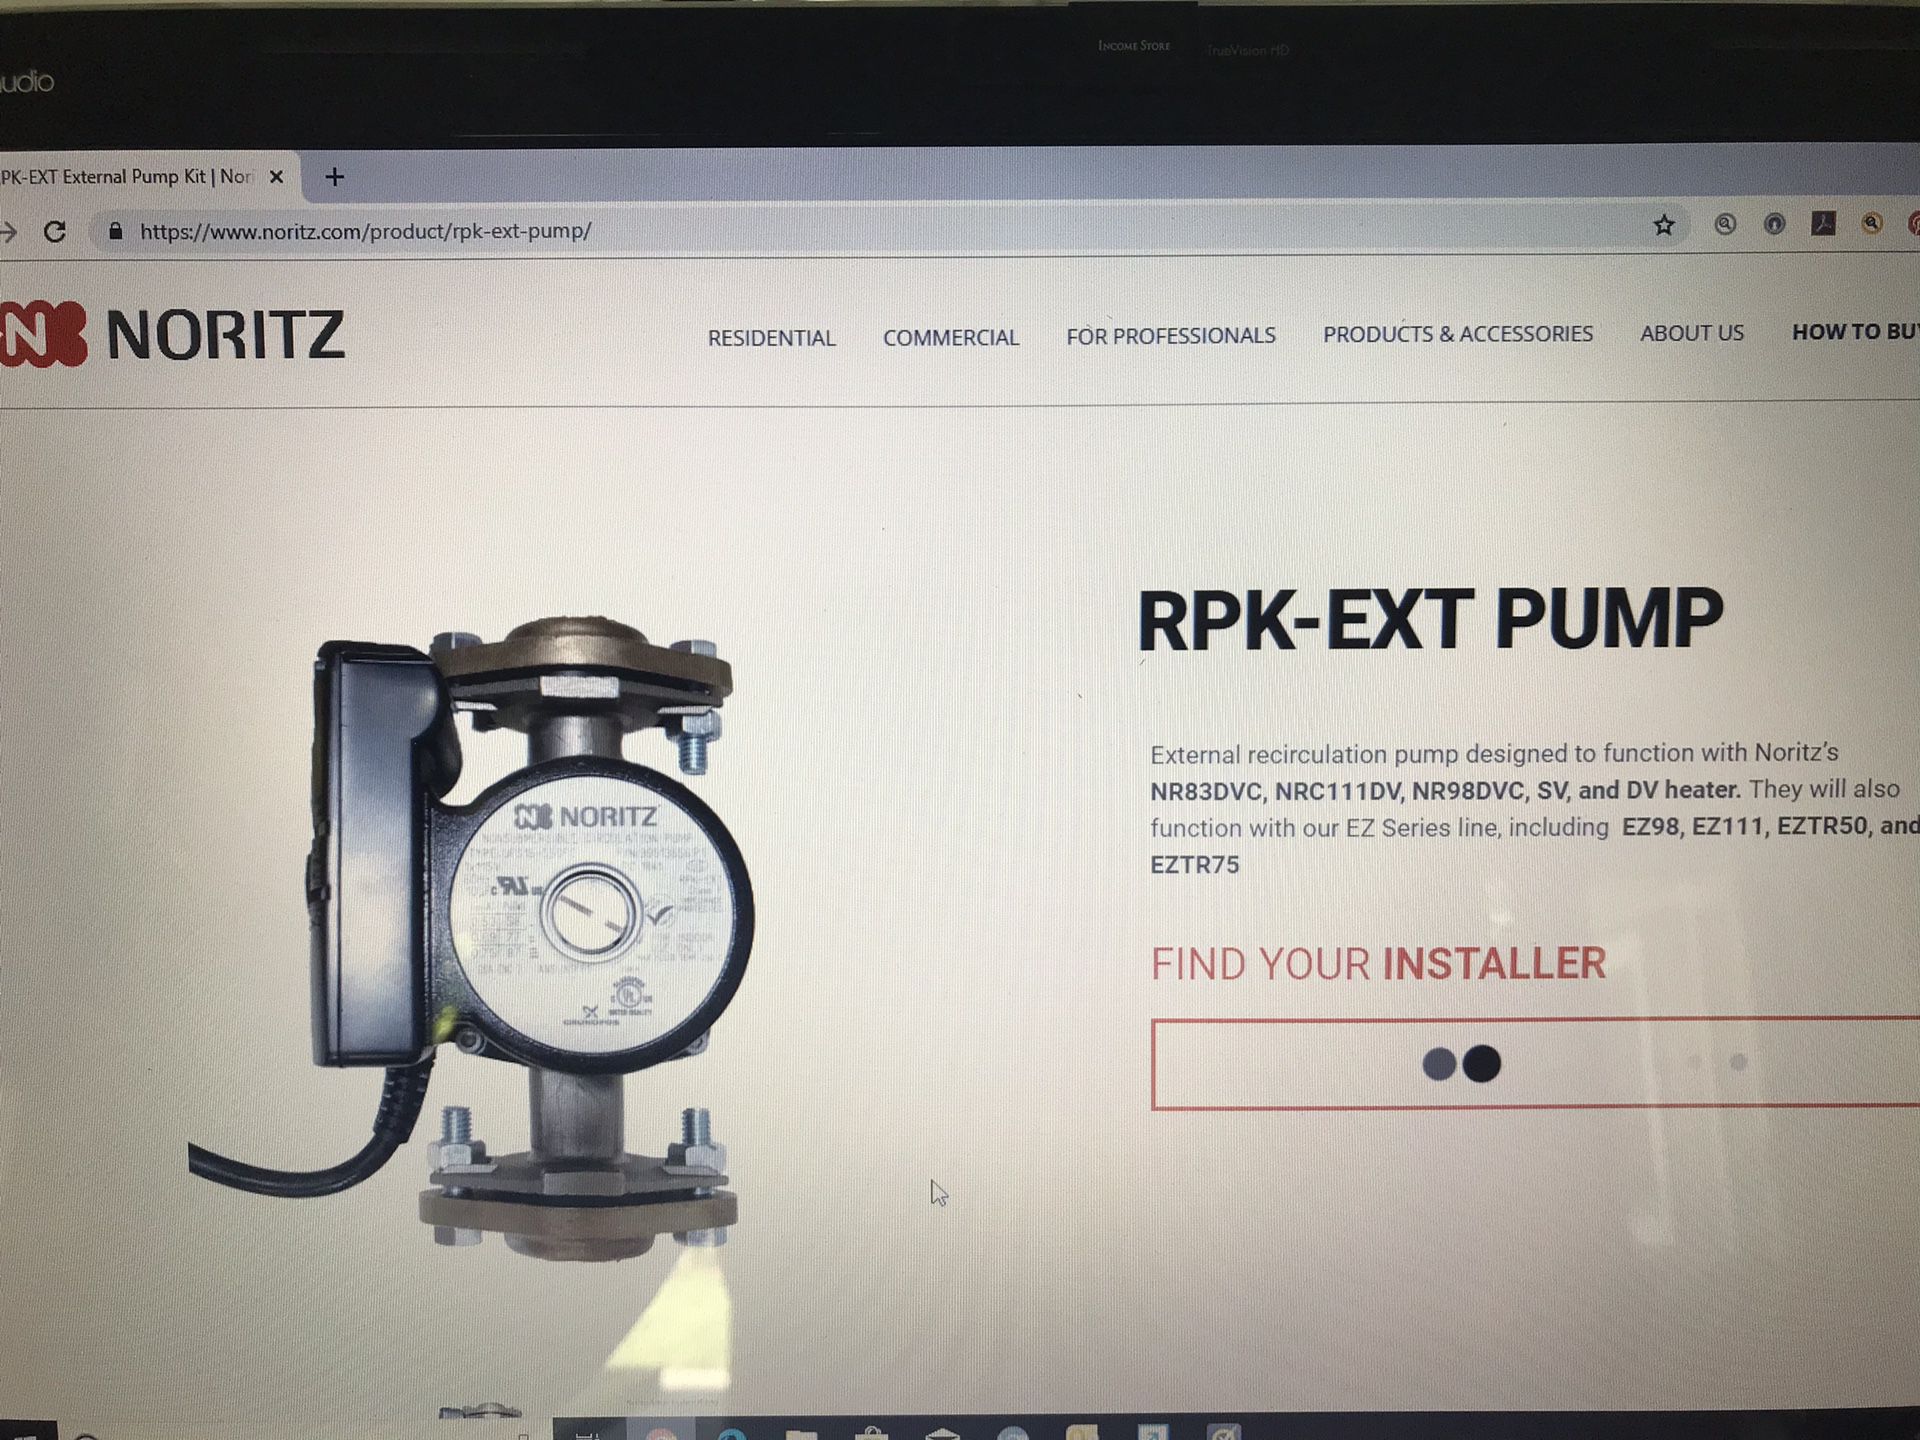 New Noritz External Recirculation Pump for Water Heater